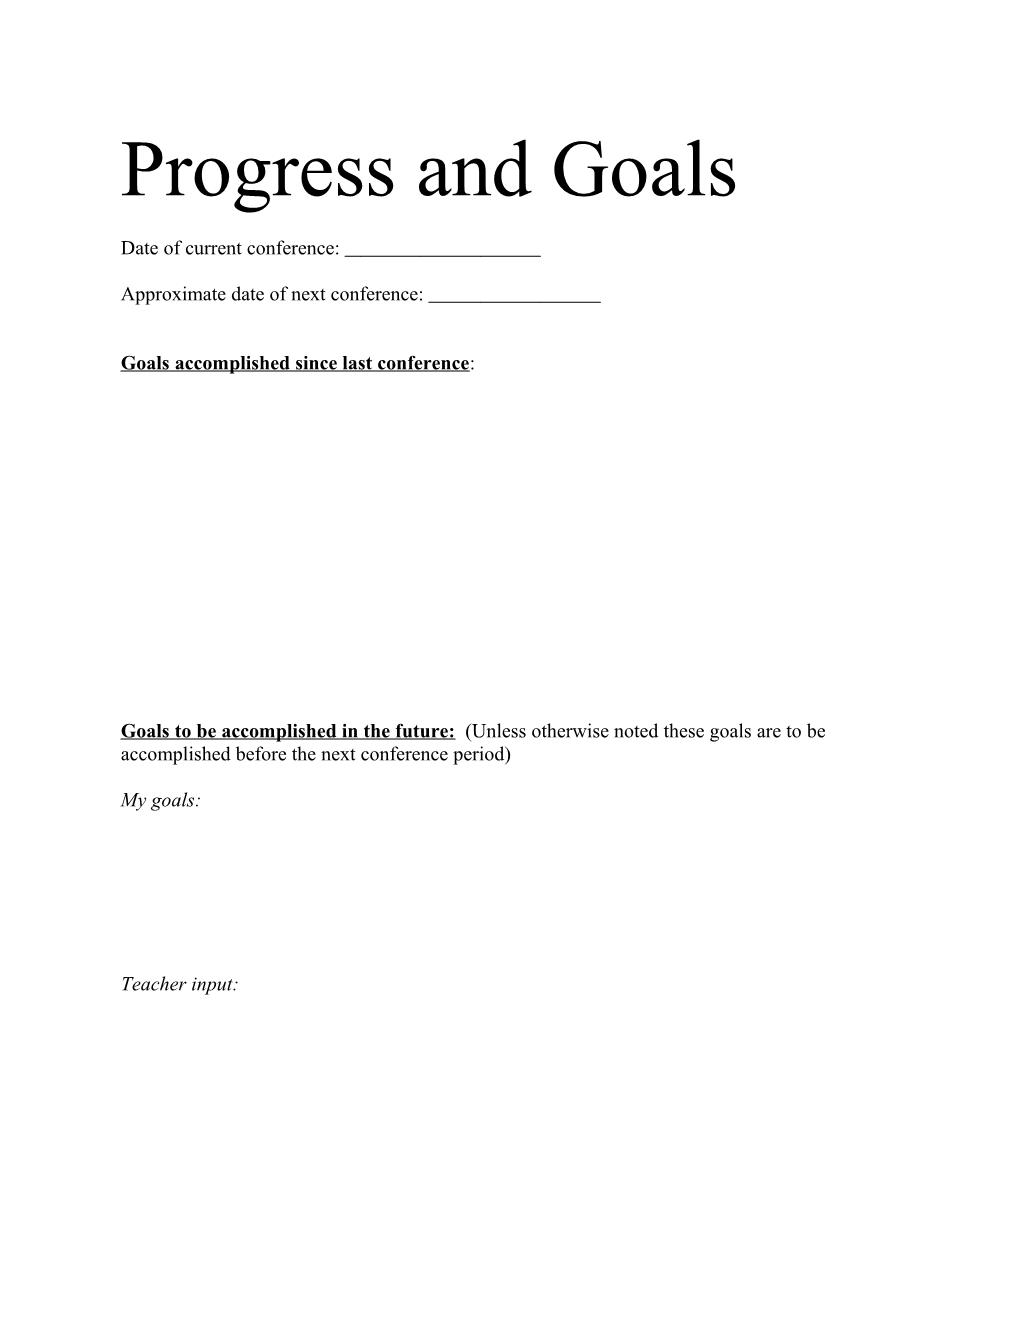 Progress and Goals